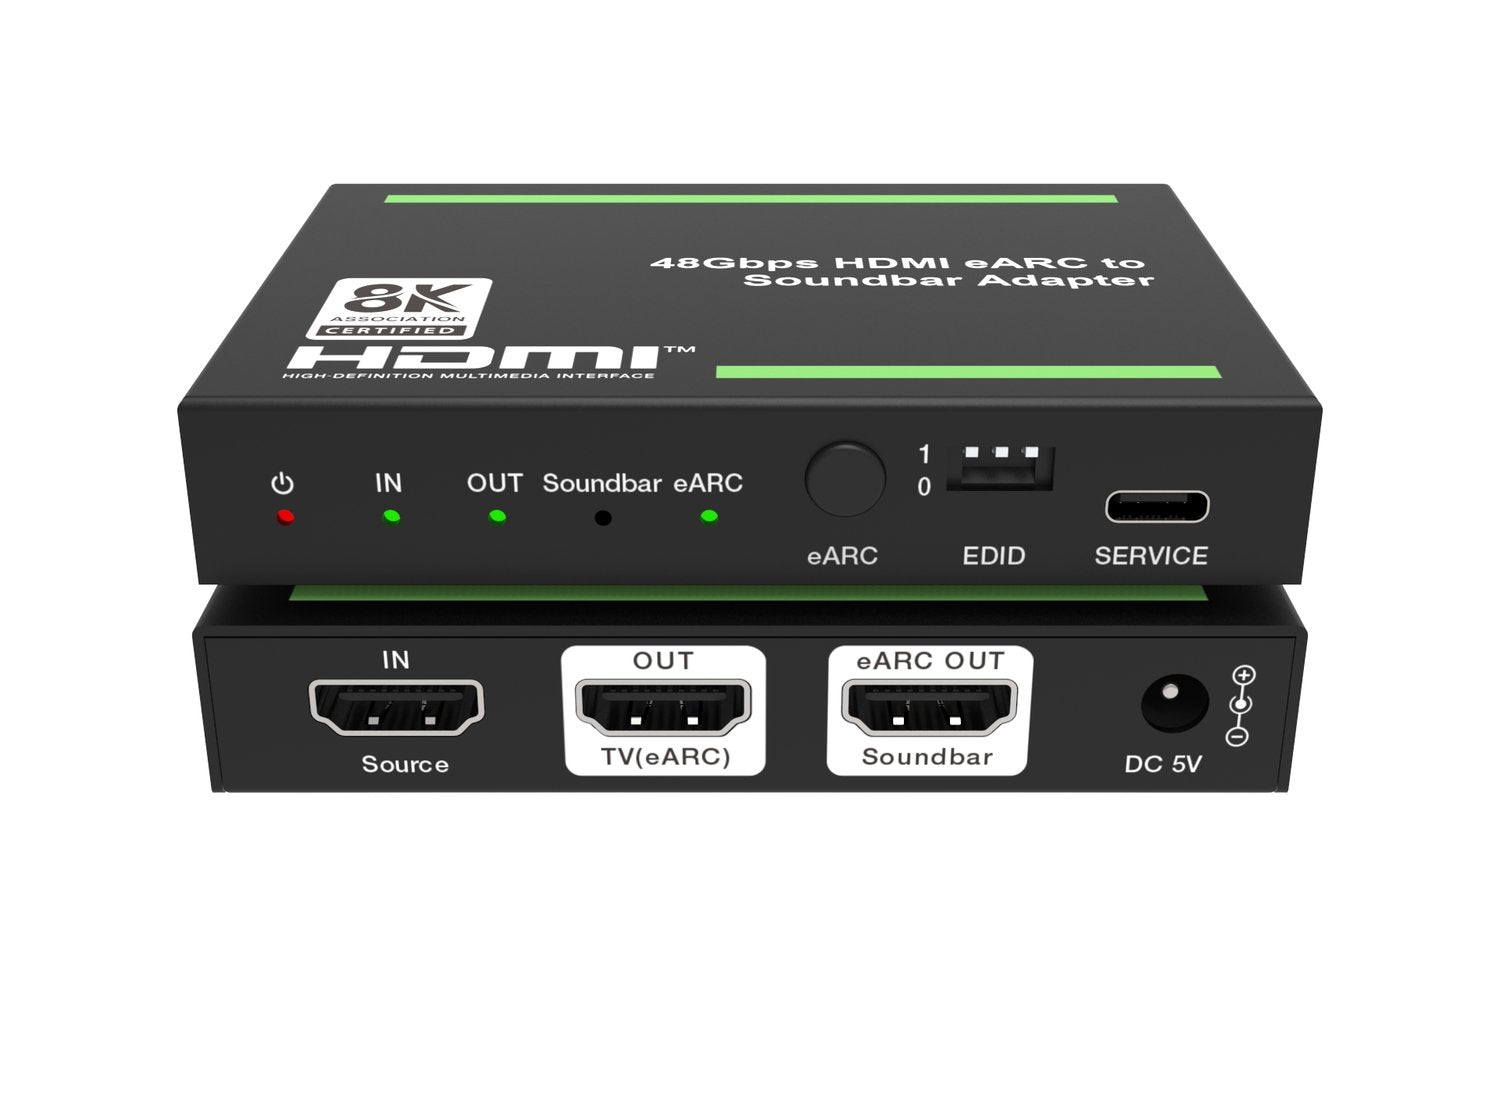 NÖRDIC 8K HDMI 2.1 eARC/ARC Soundbar Extractor